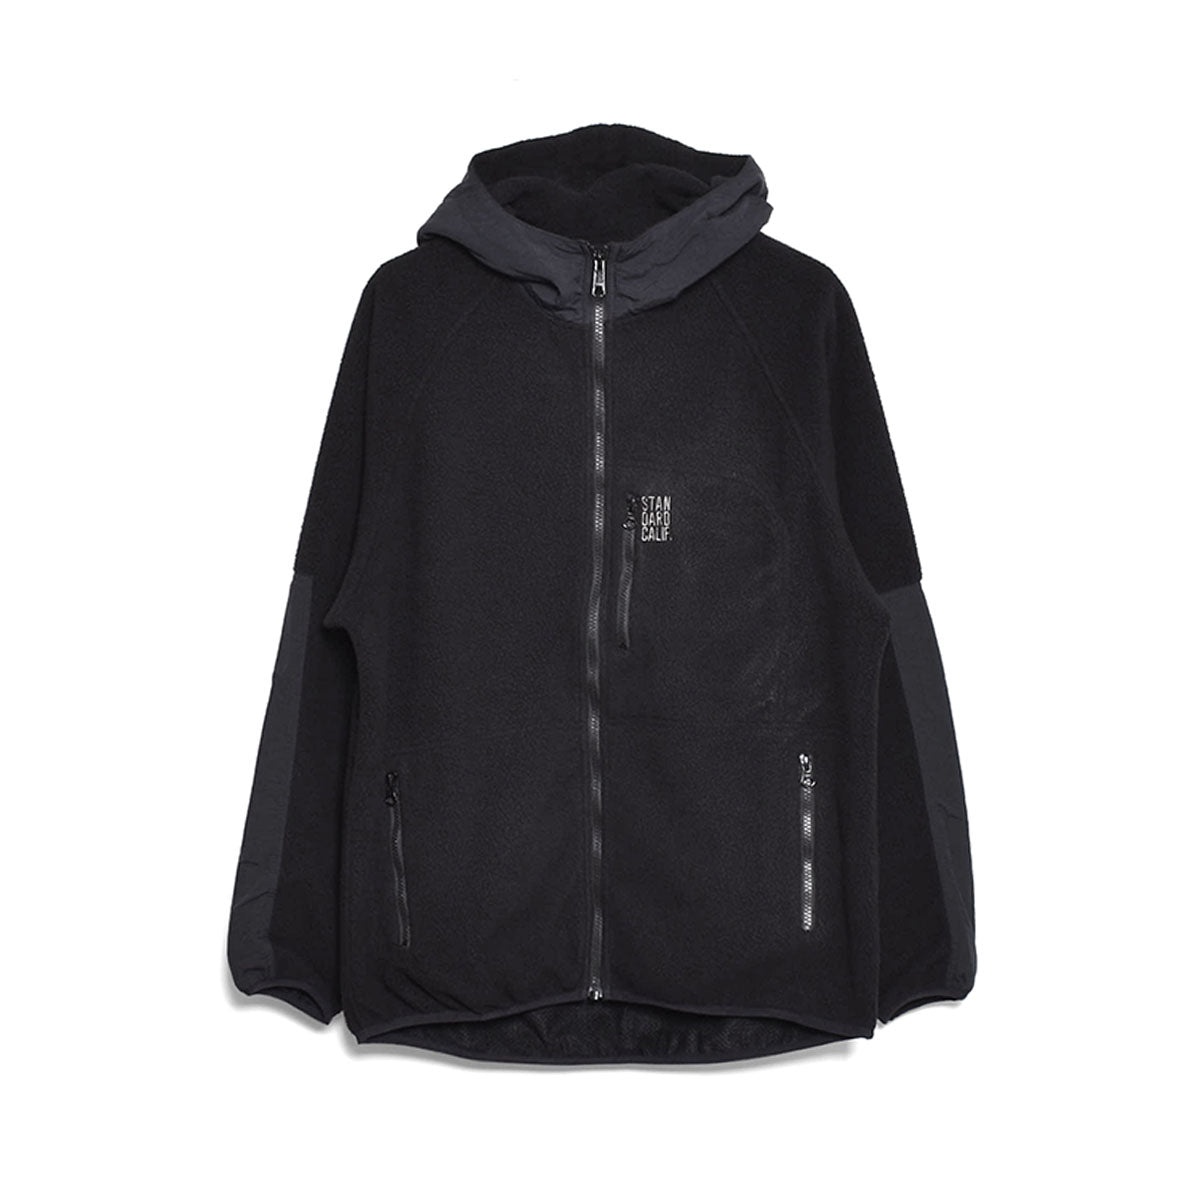 色はブラックstandard california polartech jacket 黒L